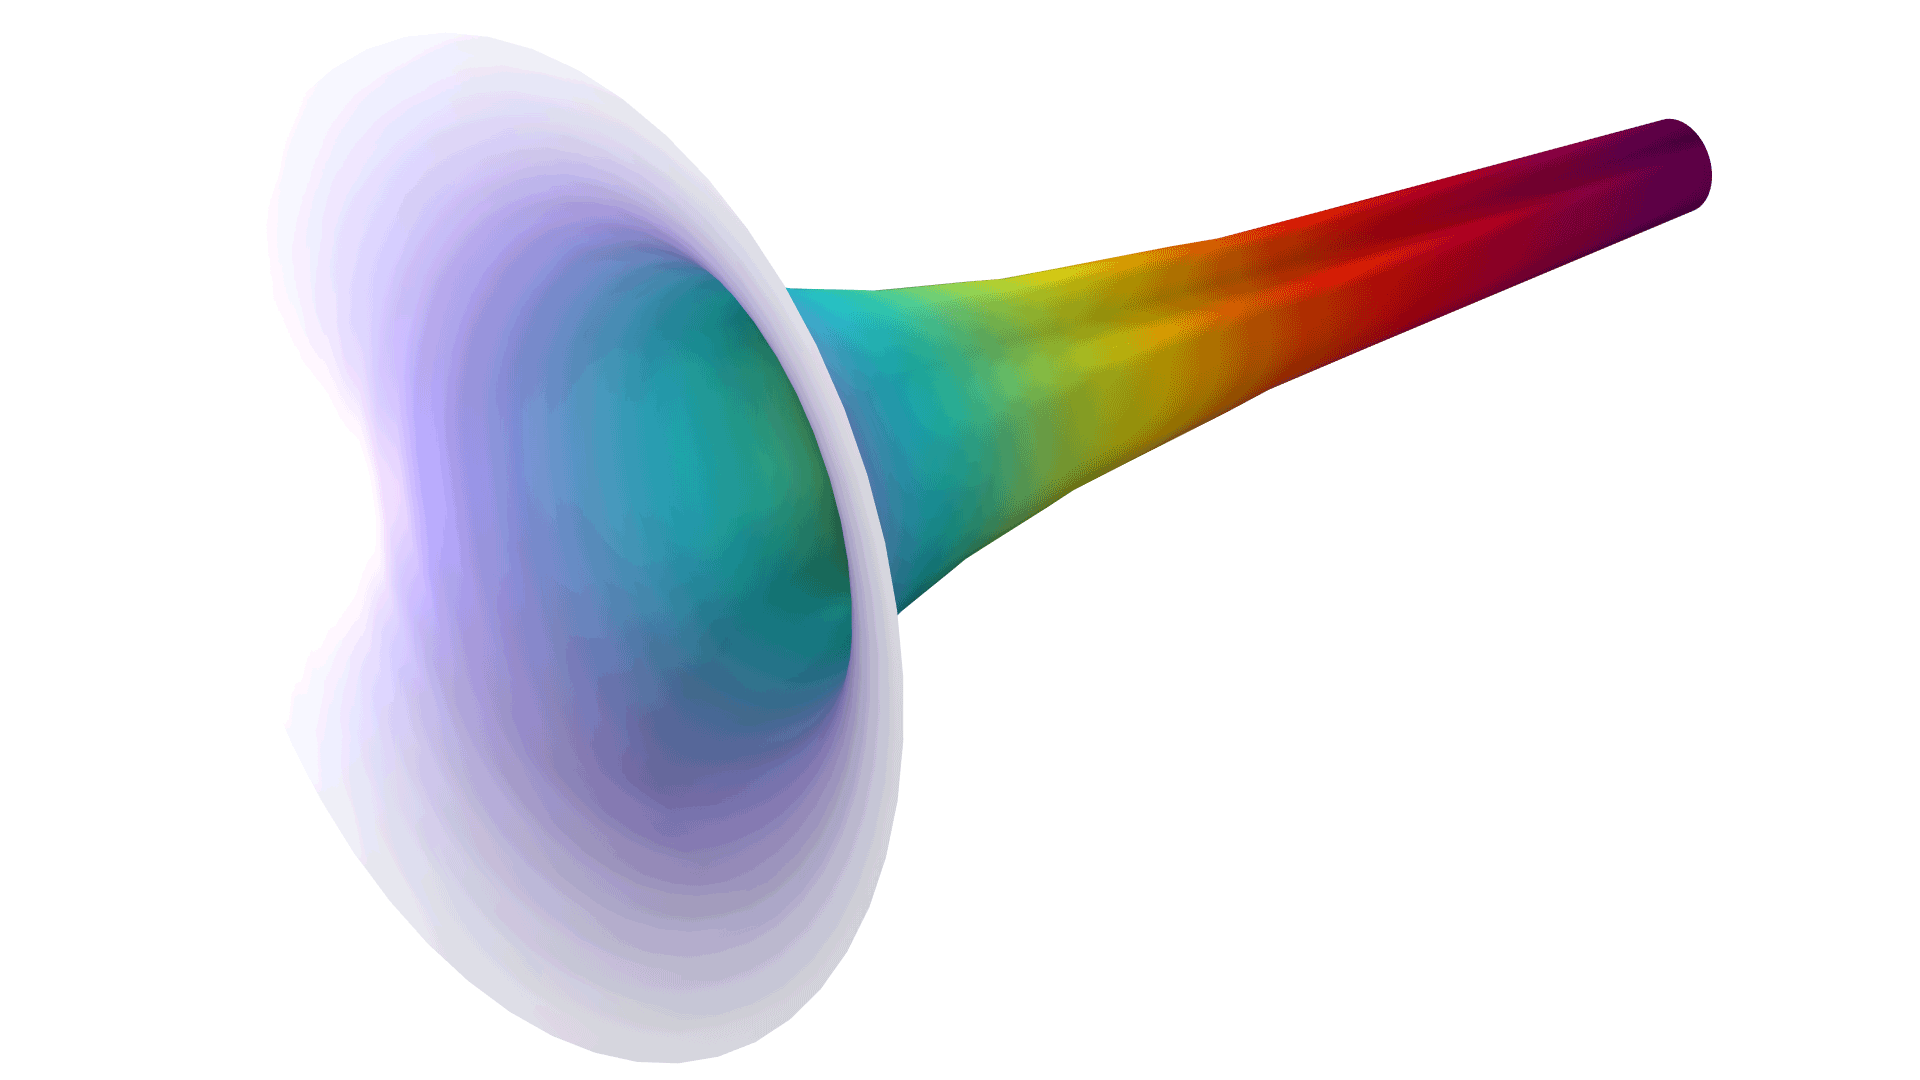 以 Prism 颜色表显示的两个同心圆柱之间的电场。